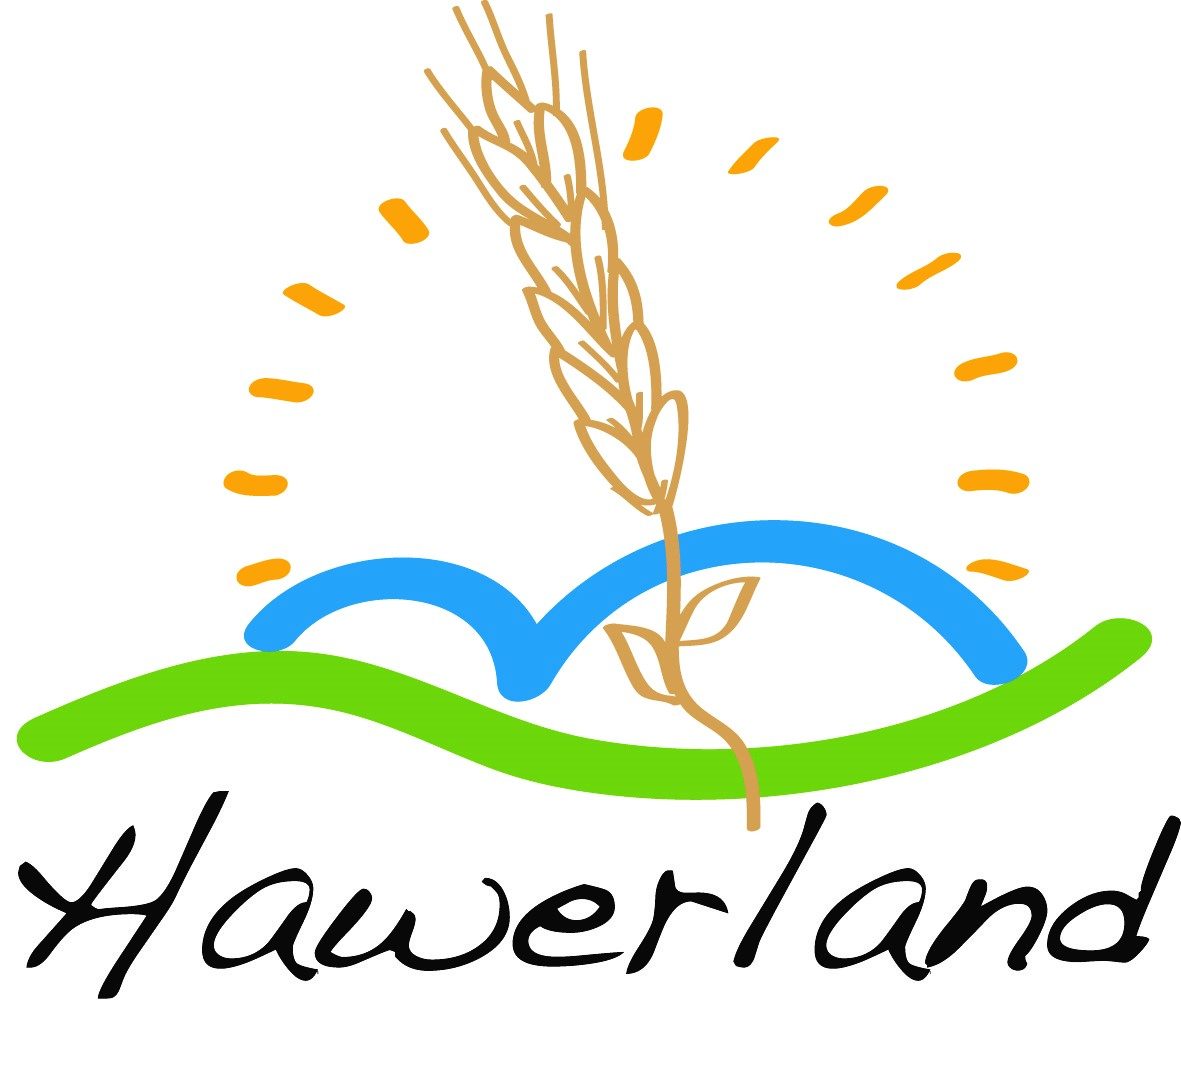 Hawerland